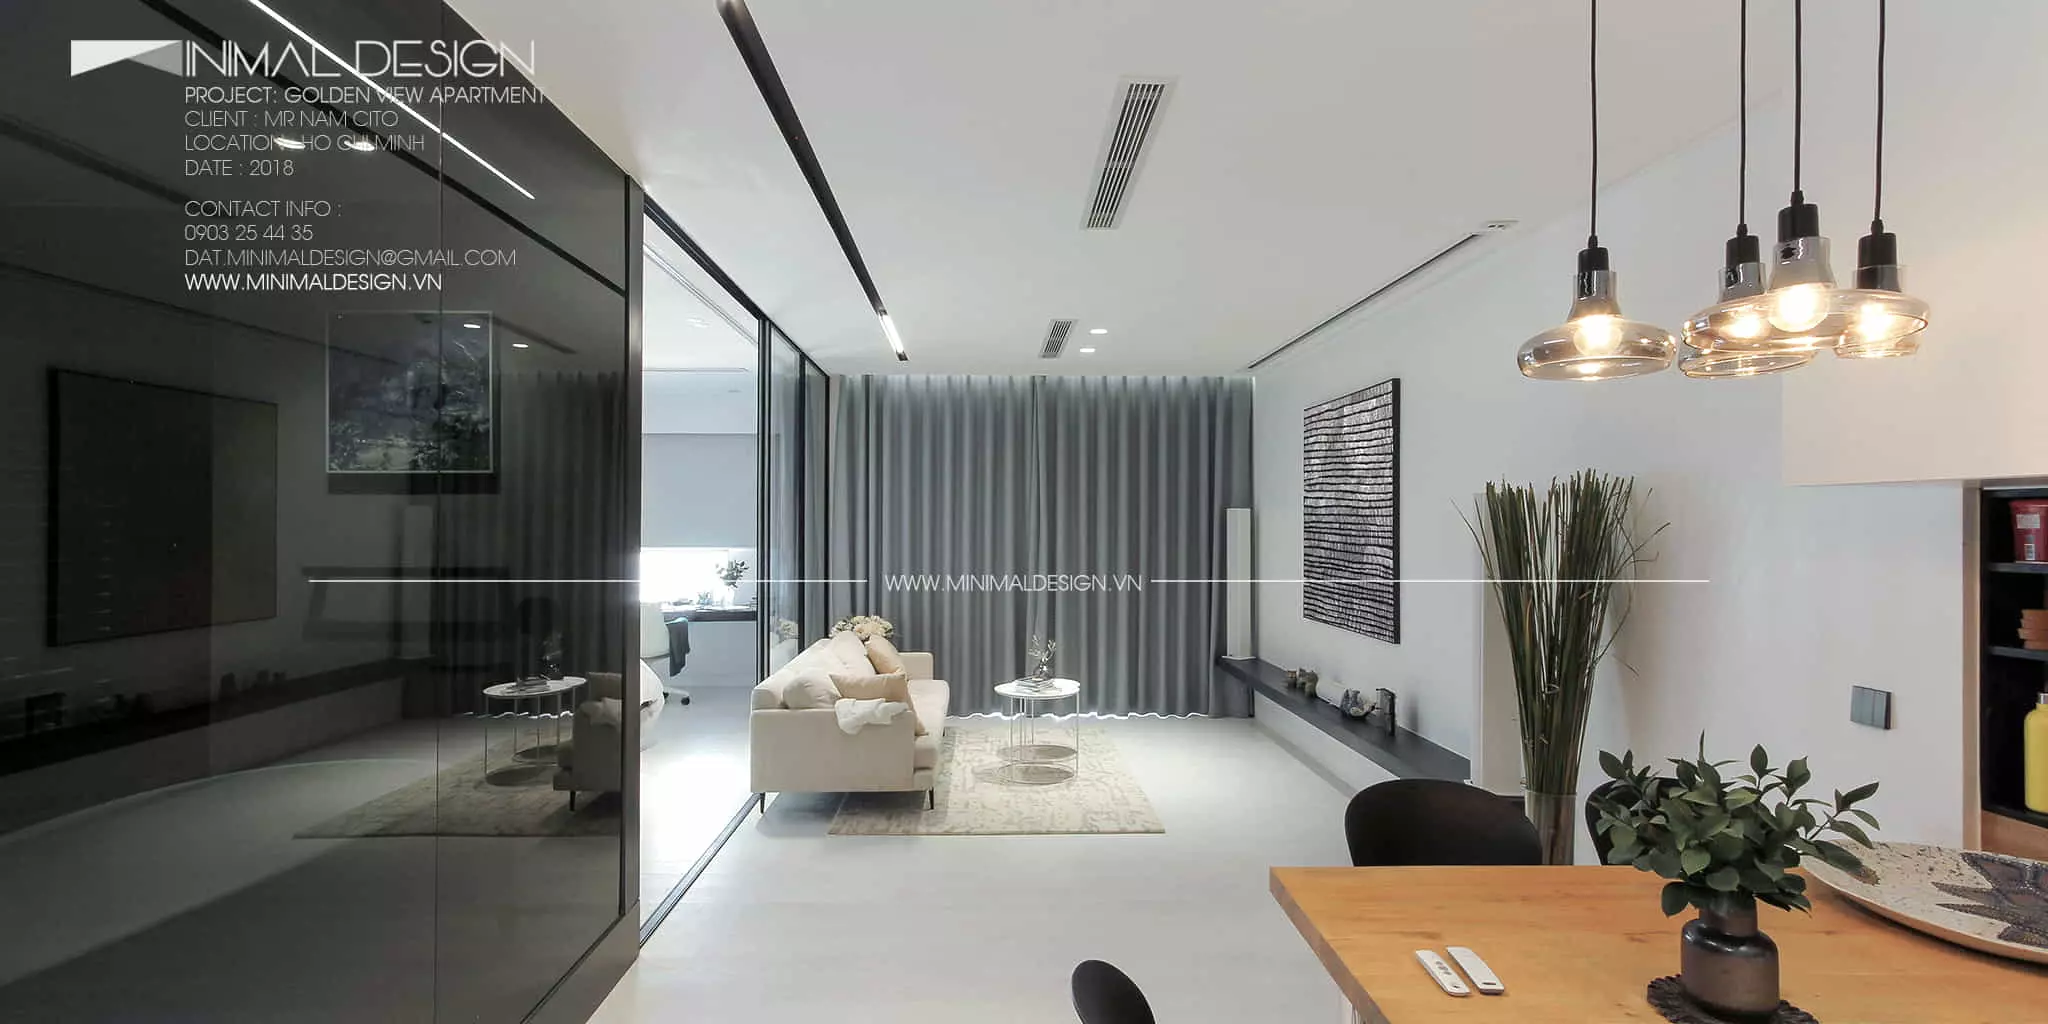 Trang trí phòng khách tối giản cho căn hộ nhỏ là bài viết giúp bạn bổ sung thêm ý tưởng trong việc “biến đổi” không gian nơi sinh hoạt chung